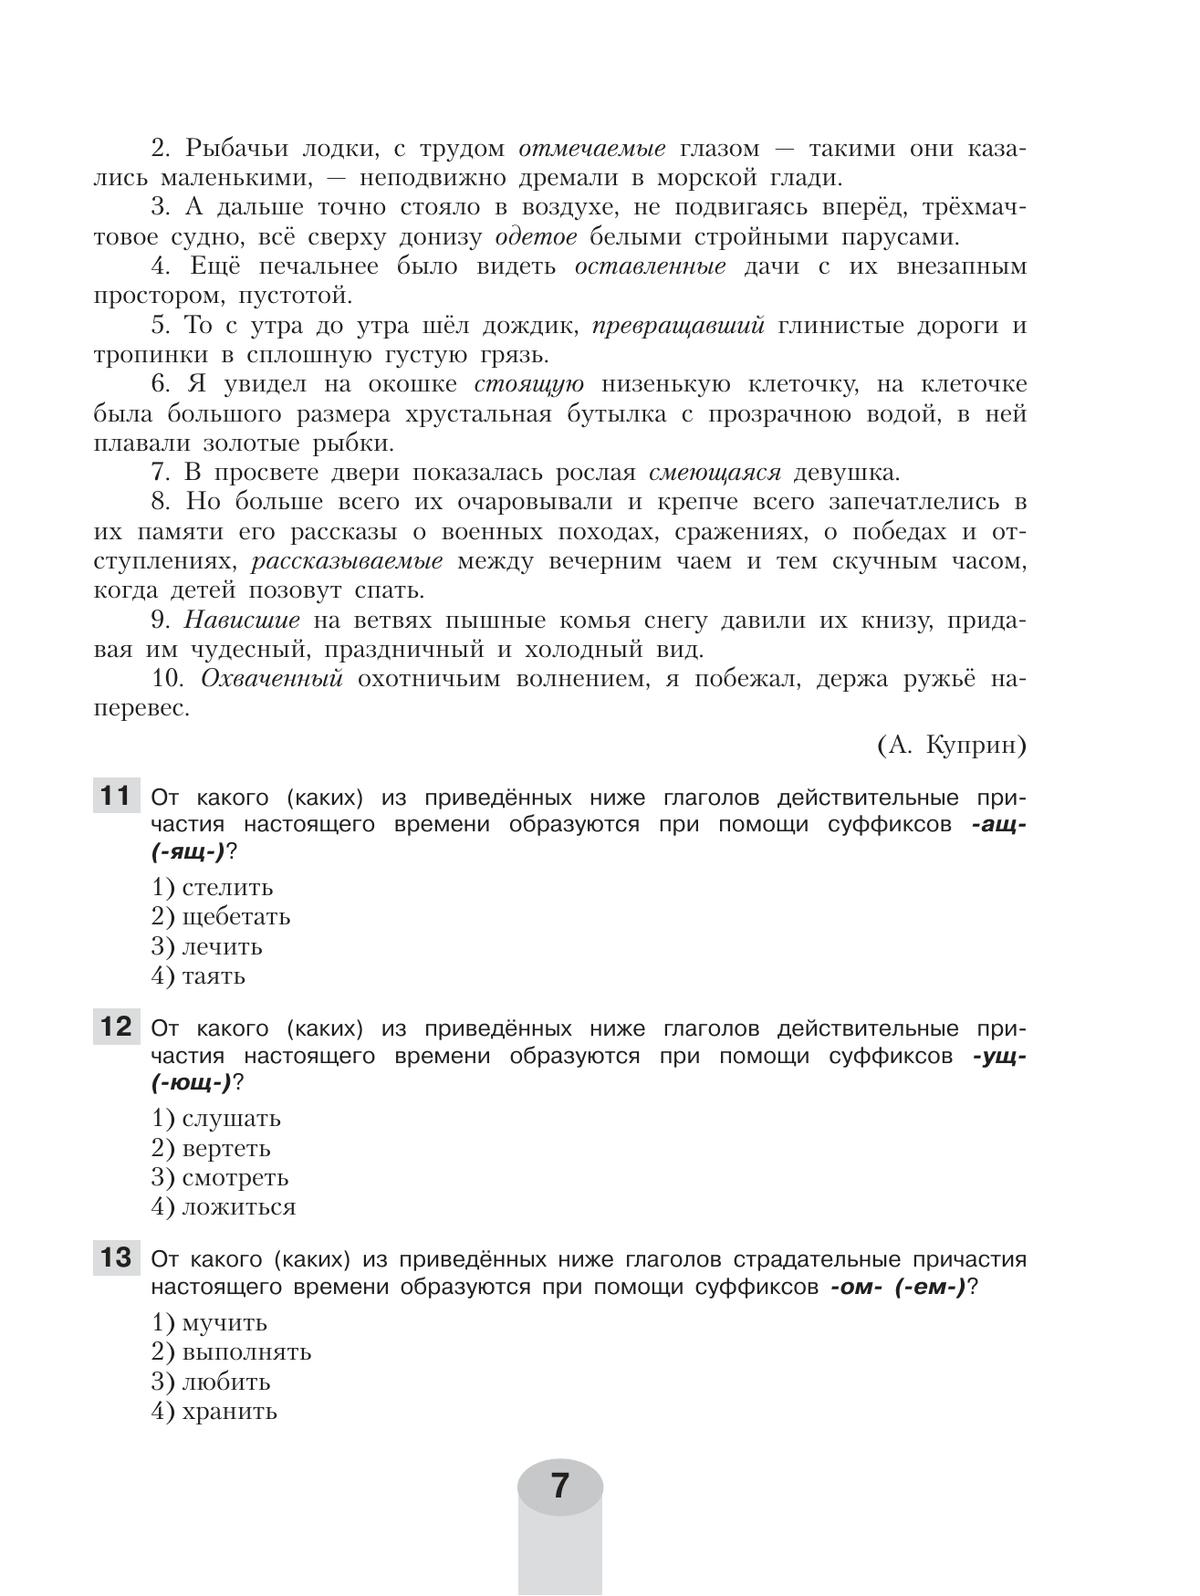 Русский язык. Самостоятельные и контрольные работы. 7 класс 10